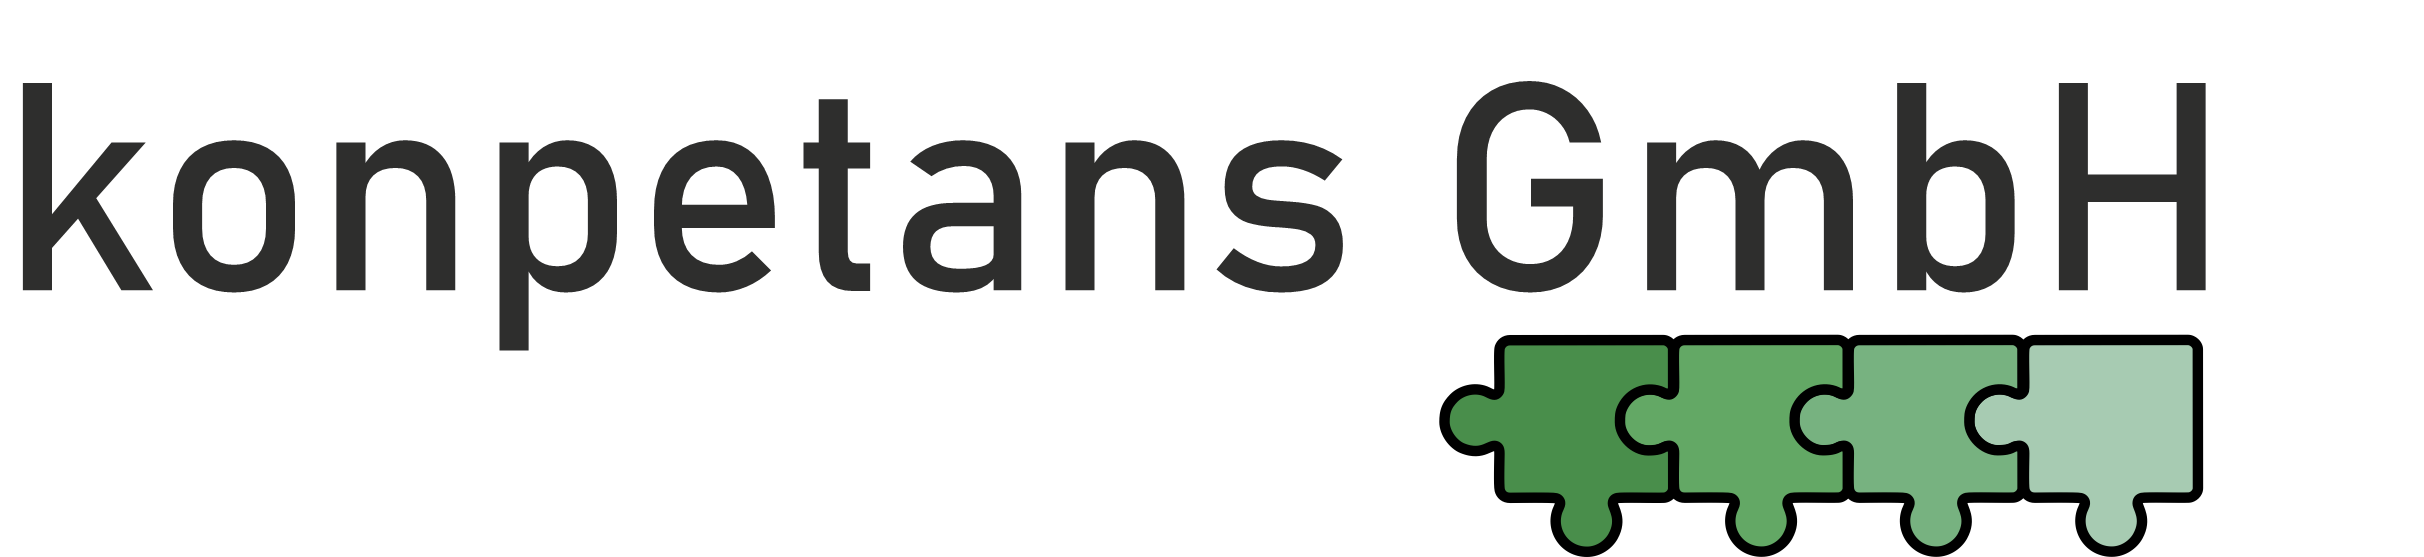 Logo konpetans GmbH